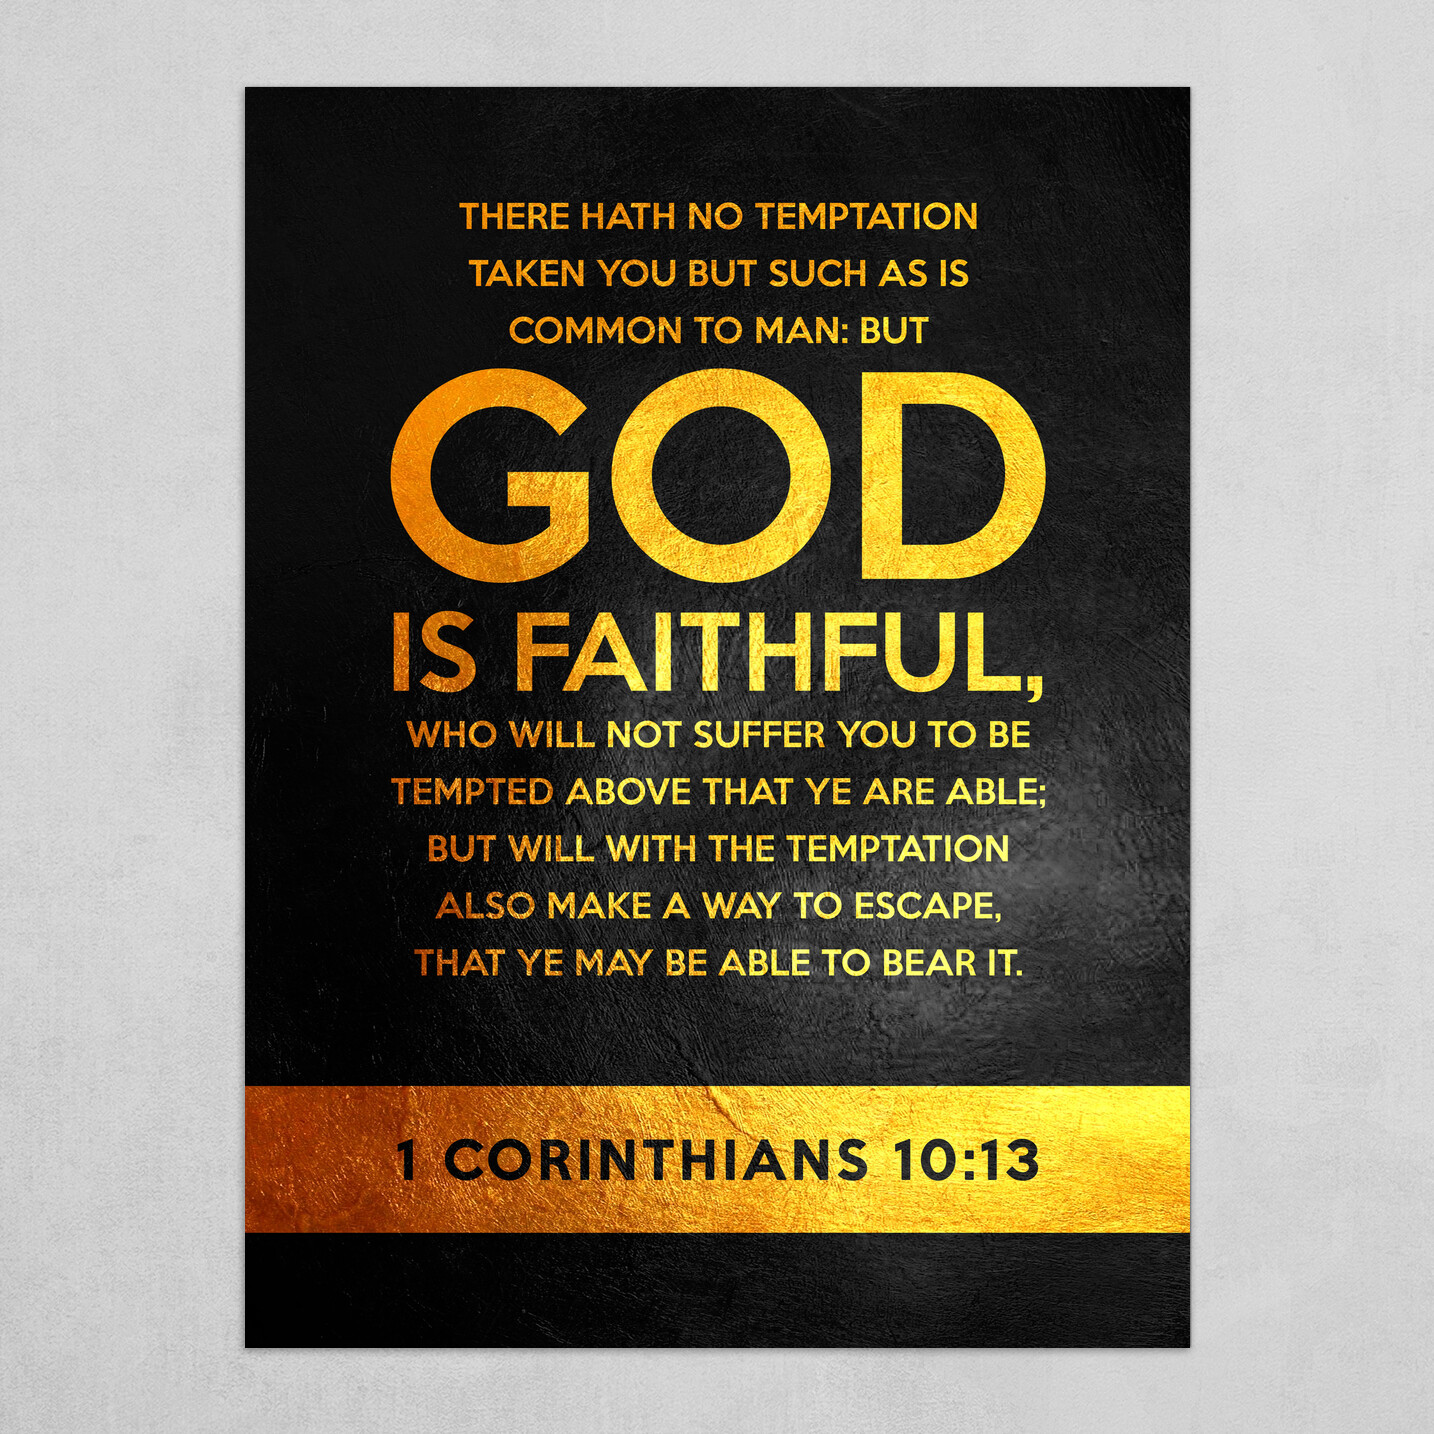 1 Corinthians 10:13 Bible Verse Text Art